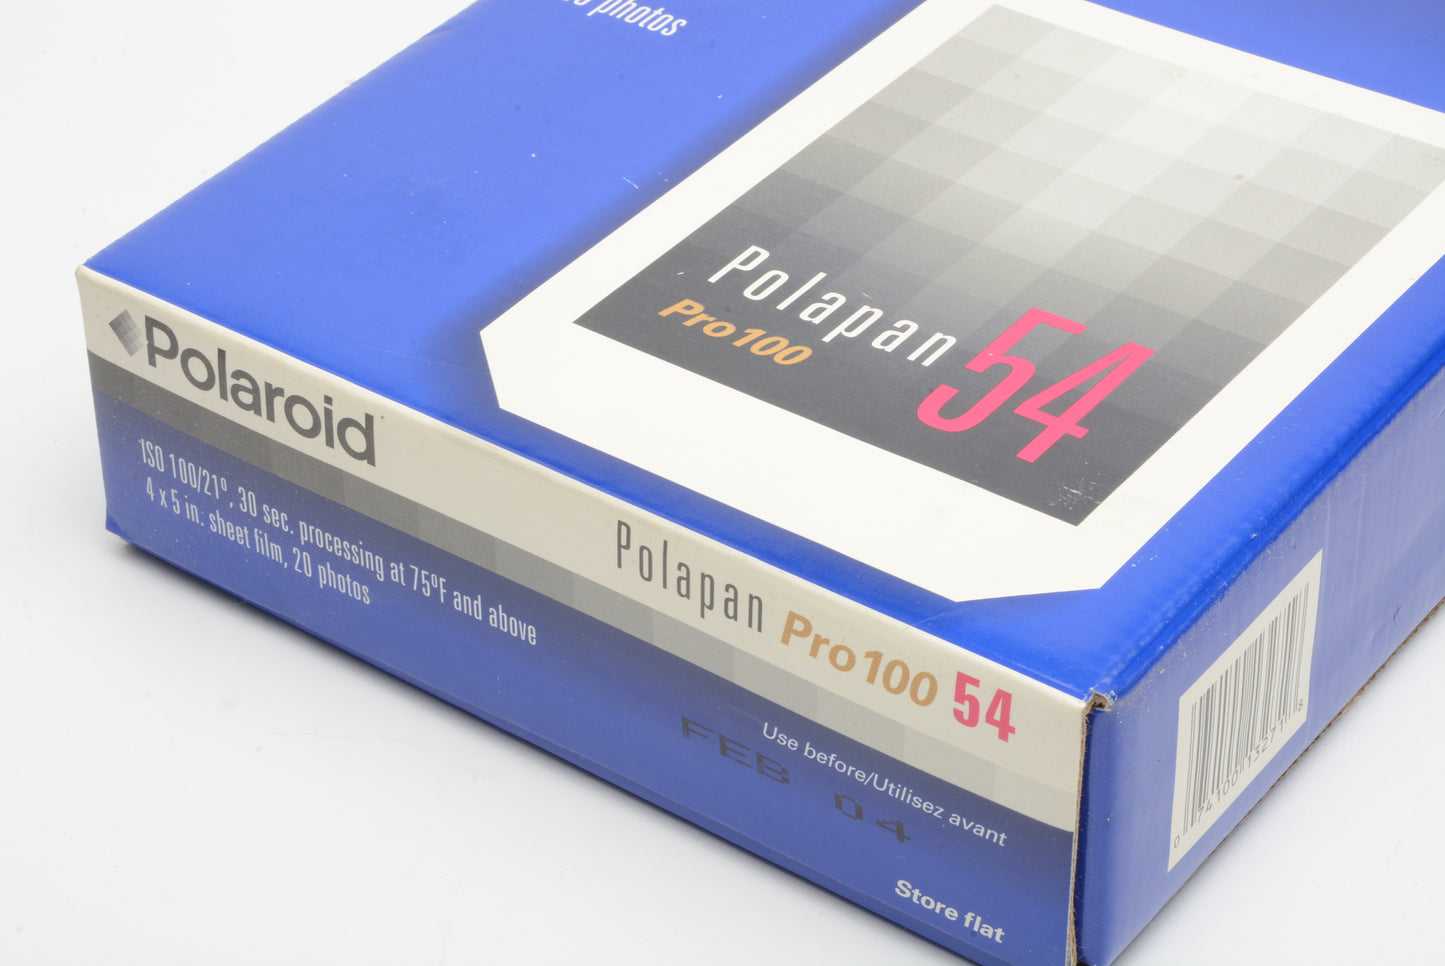 Polaroid Polapan Pro 100 Type 54 - Sealed box ISO 100 - Expired 02/04